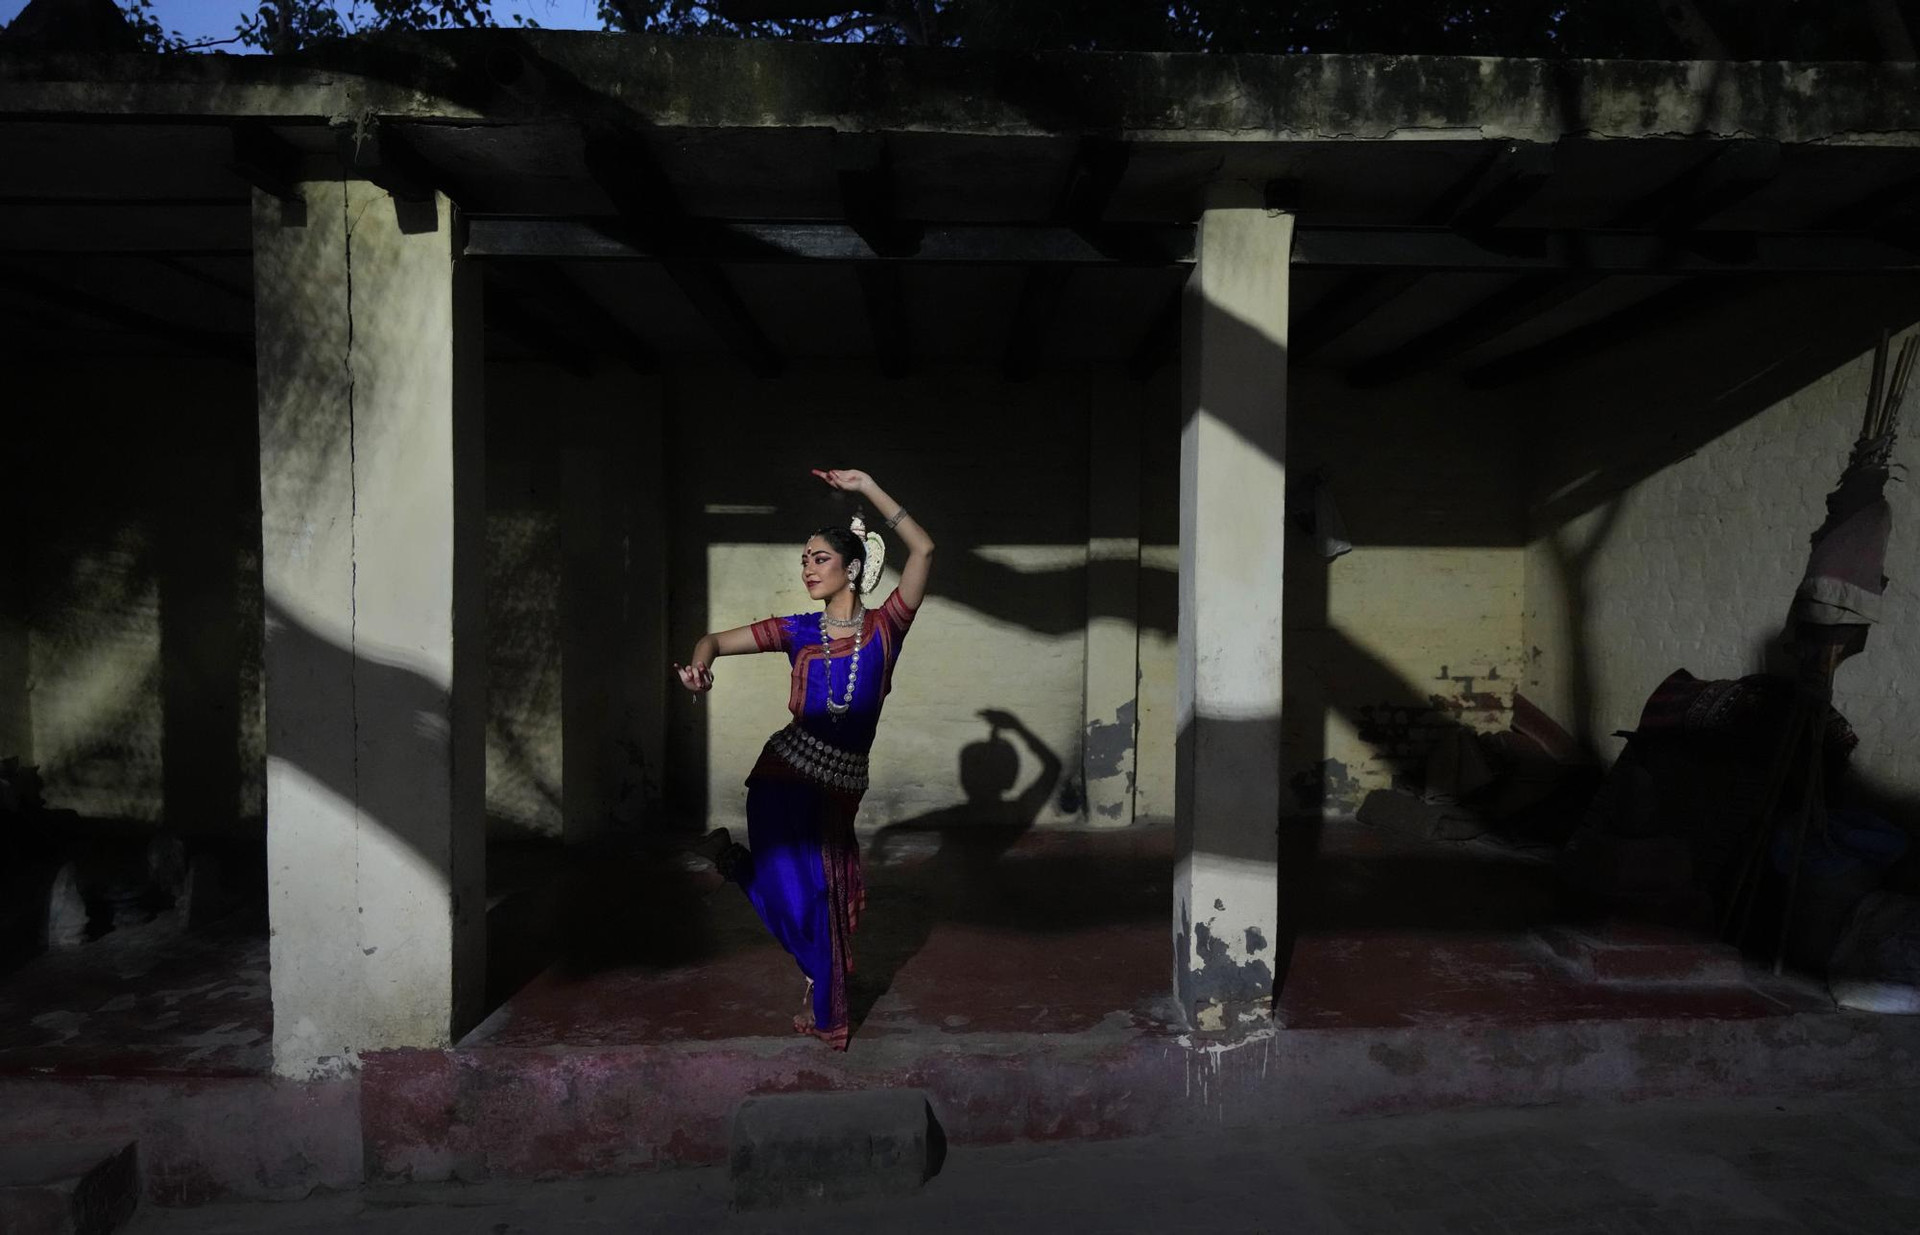 Vũ công Odissi cổ điển người Ấn Độ Damini Mehta, 22 tuổi, tạo dáng trên bến sông Yamuna, ở New Delhi, Ấn Độ. Ảnh: AP